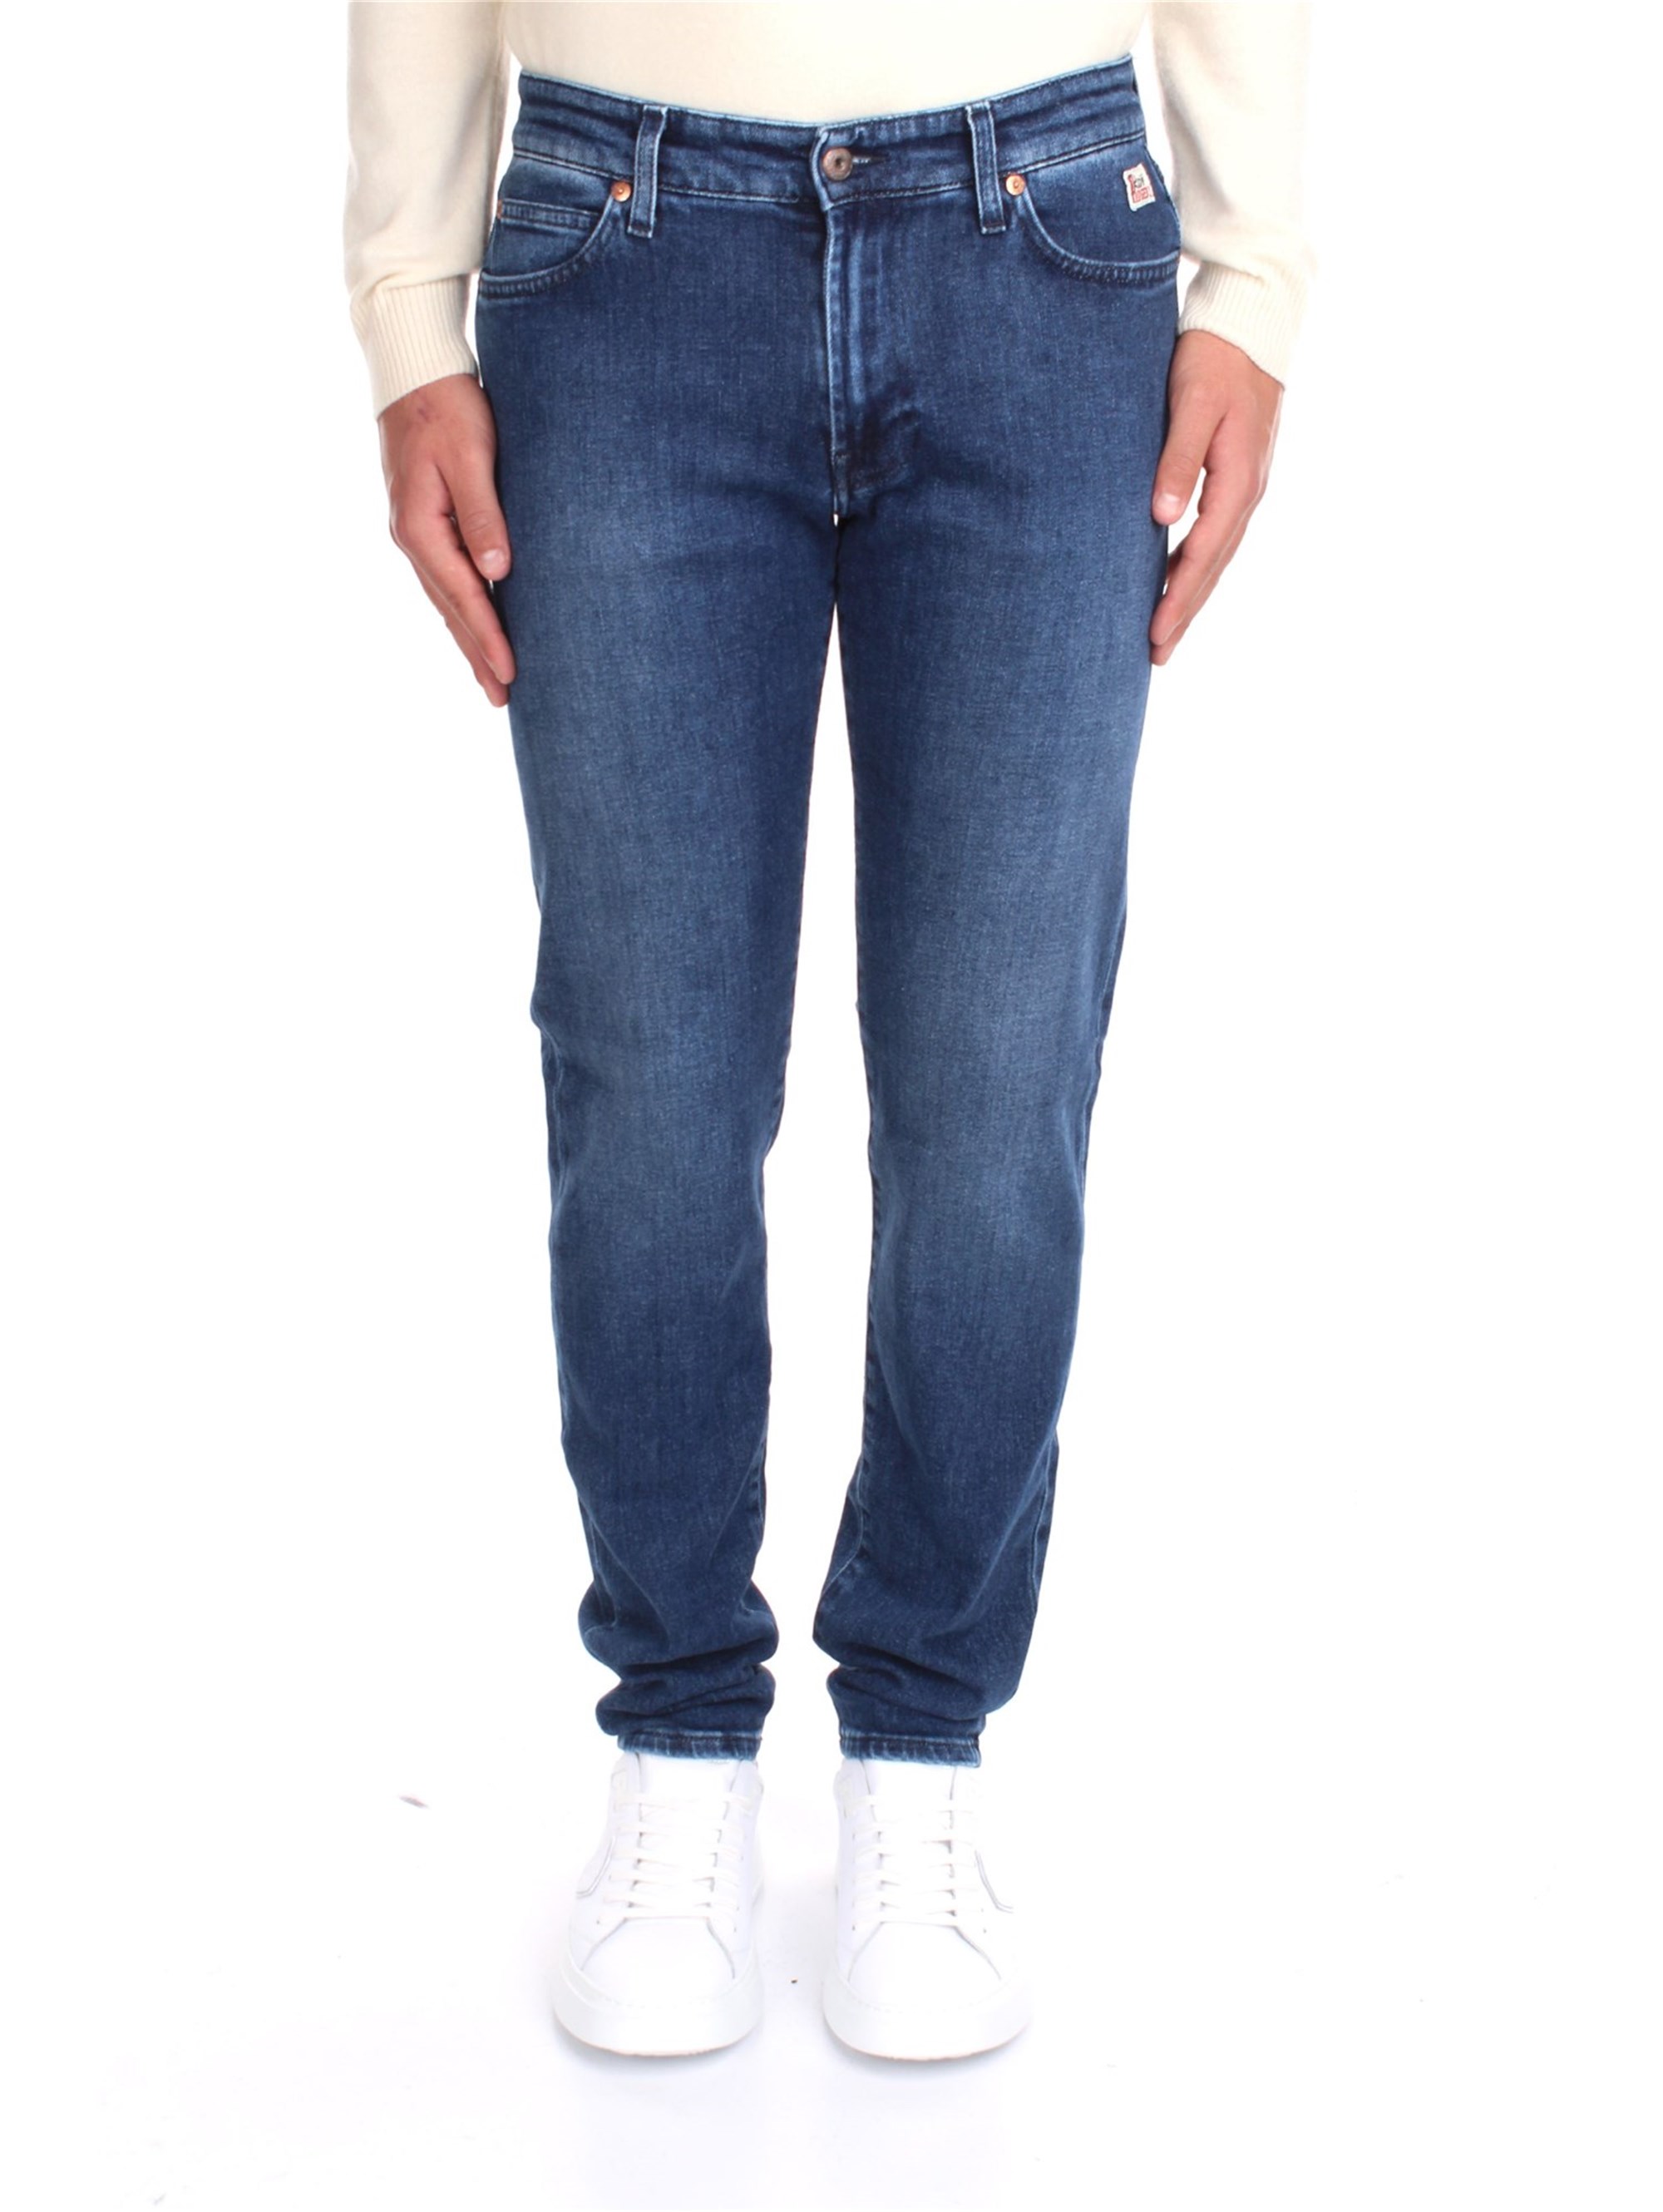 roy roger's Jeans Herren Denim günstig online kaufen